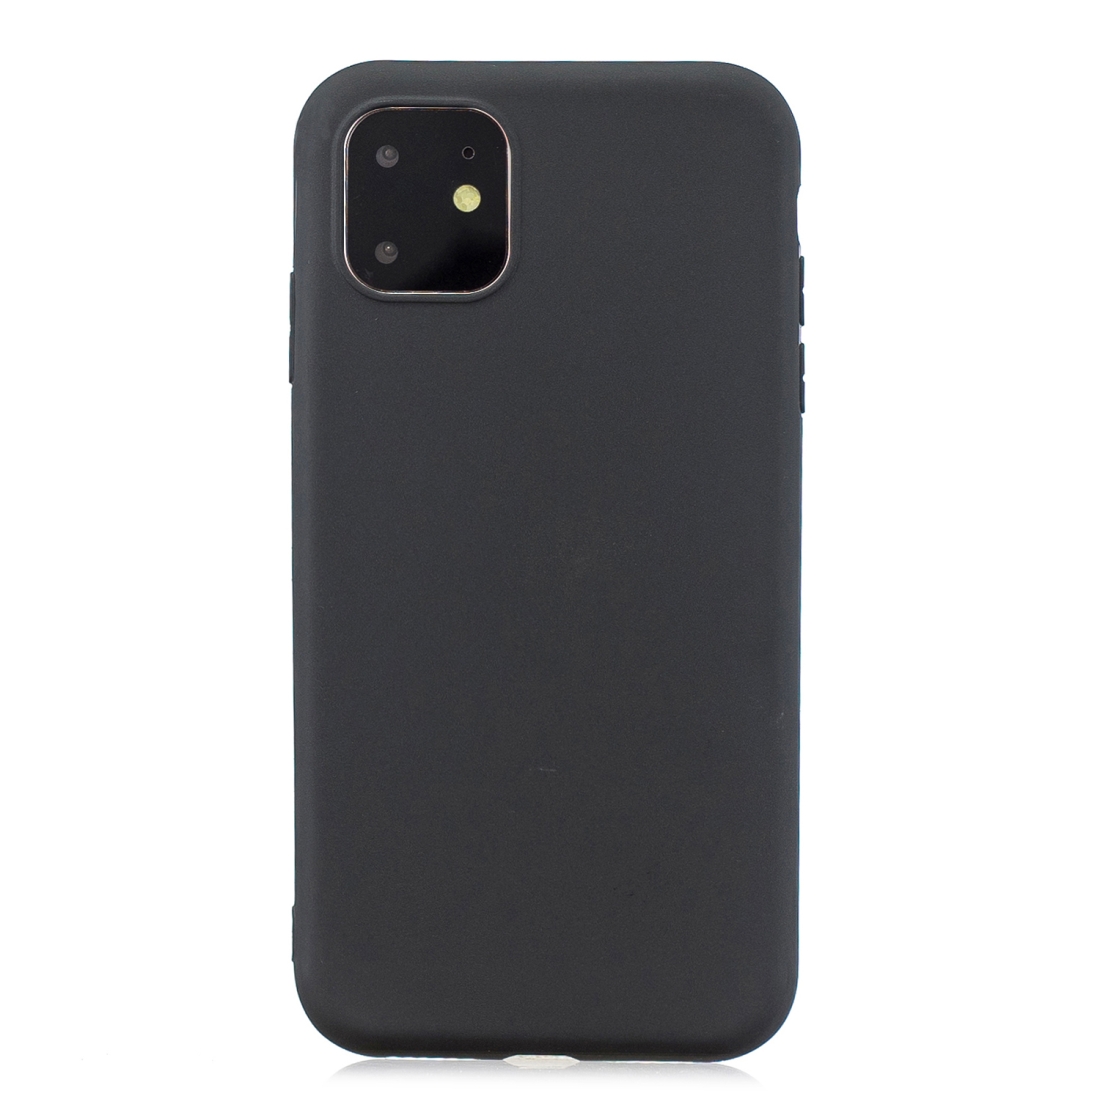 Matný silikonový obal na iPhone 11 - černá